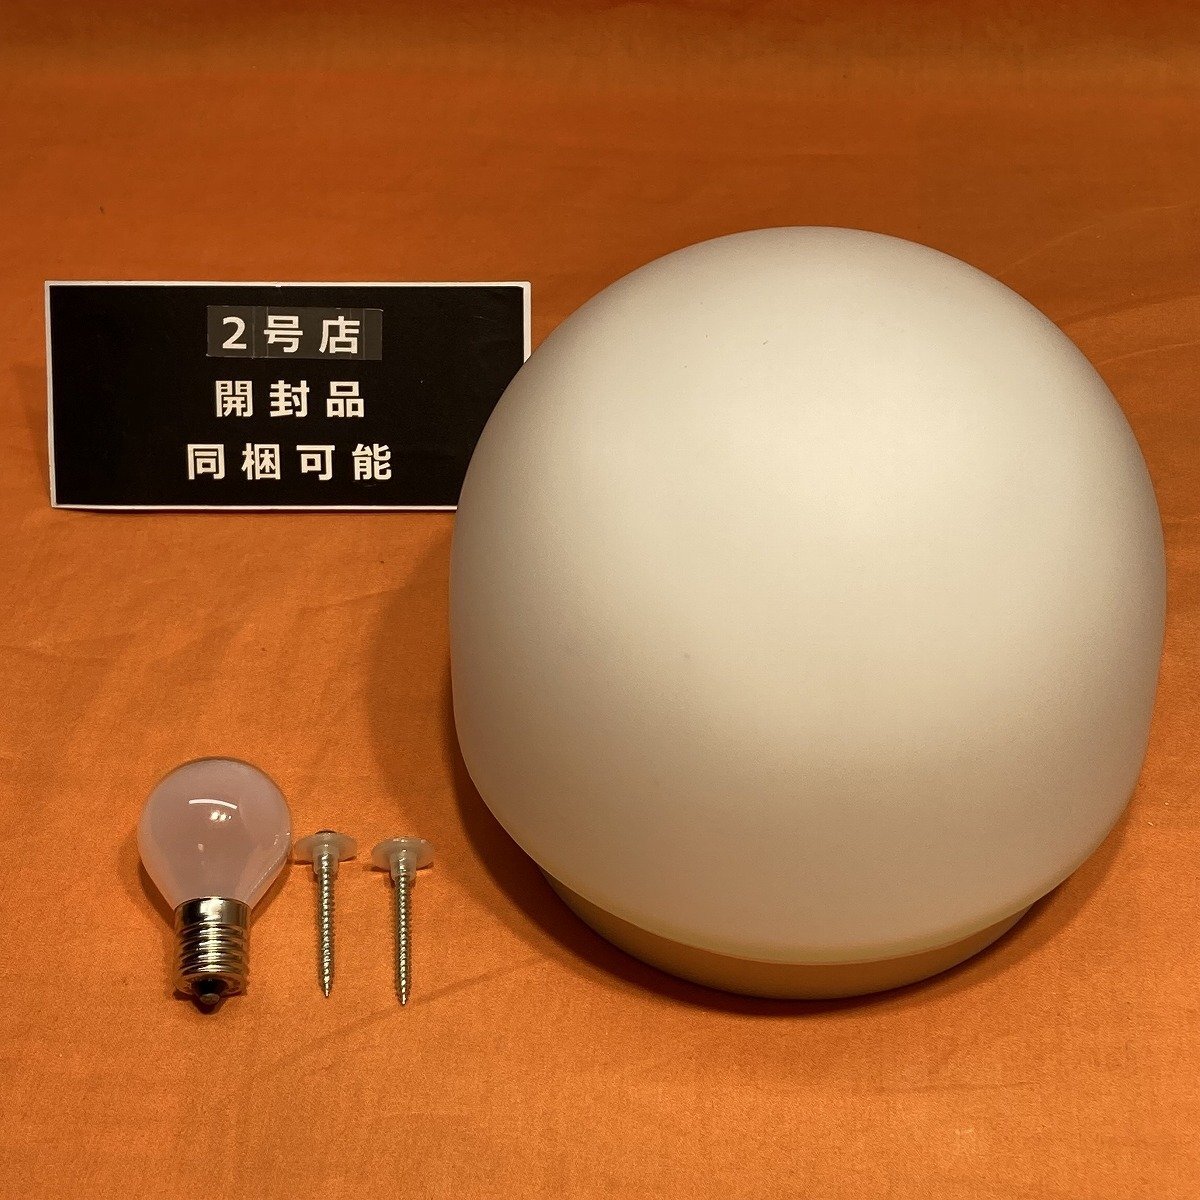 電球ブラケット 東芝 IB30331 40W形ミニランプ付 LED電球取付可 サテイゴー_画像1